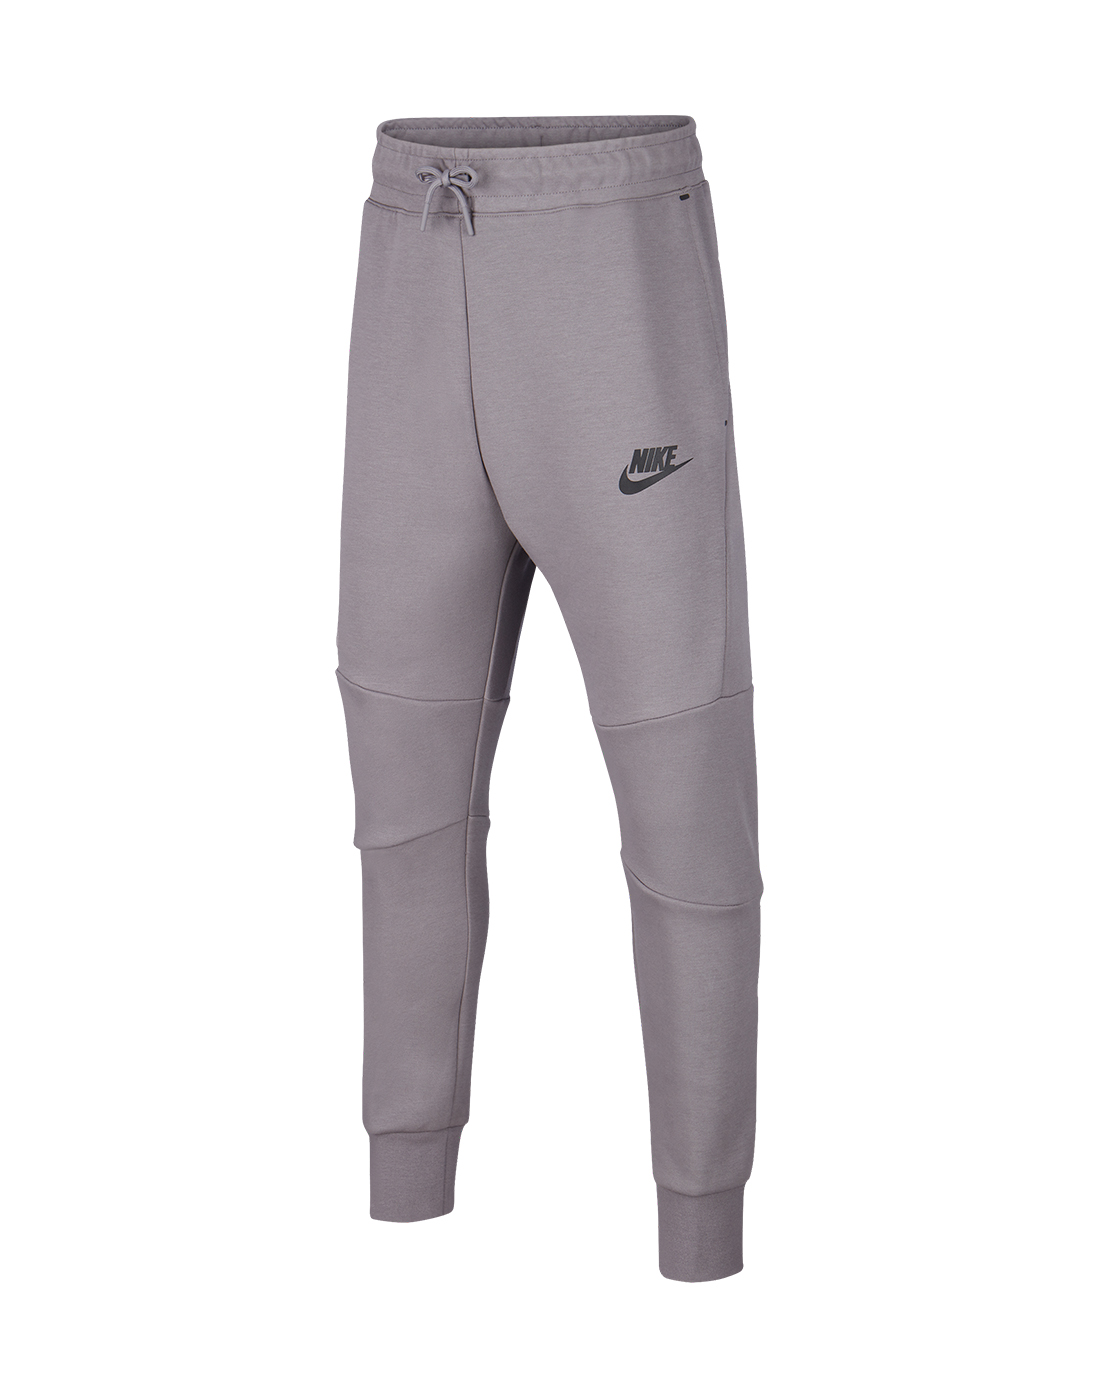 Nike Older Boys Tech Fleece Pants - Grey | Life Style Sports UK